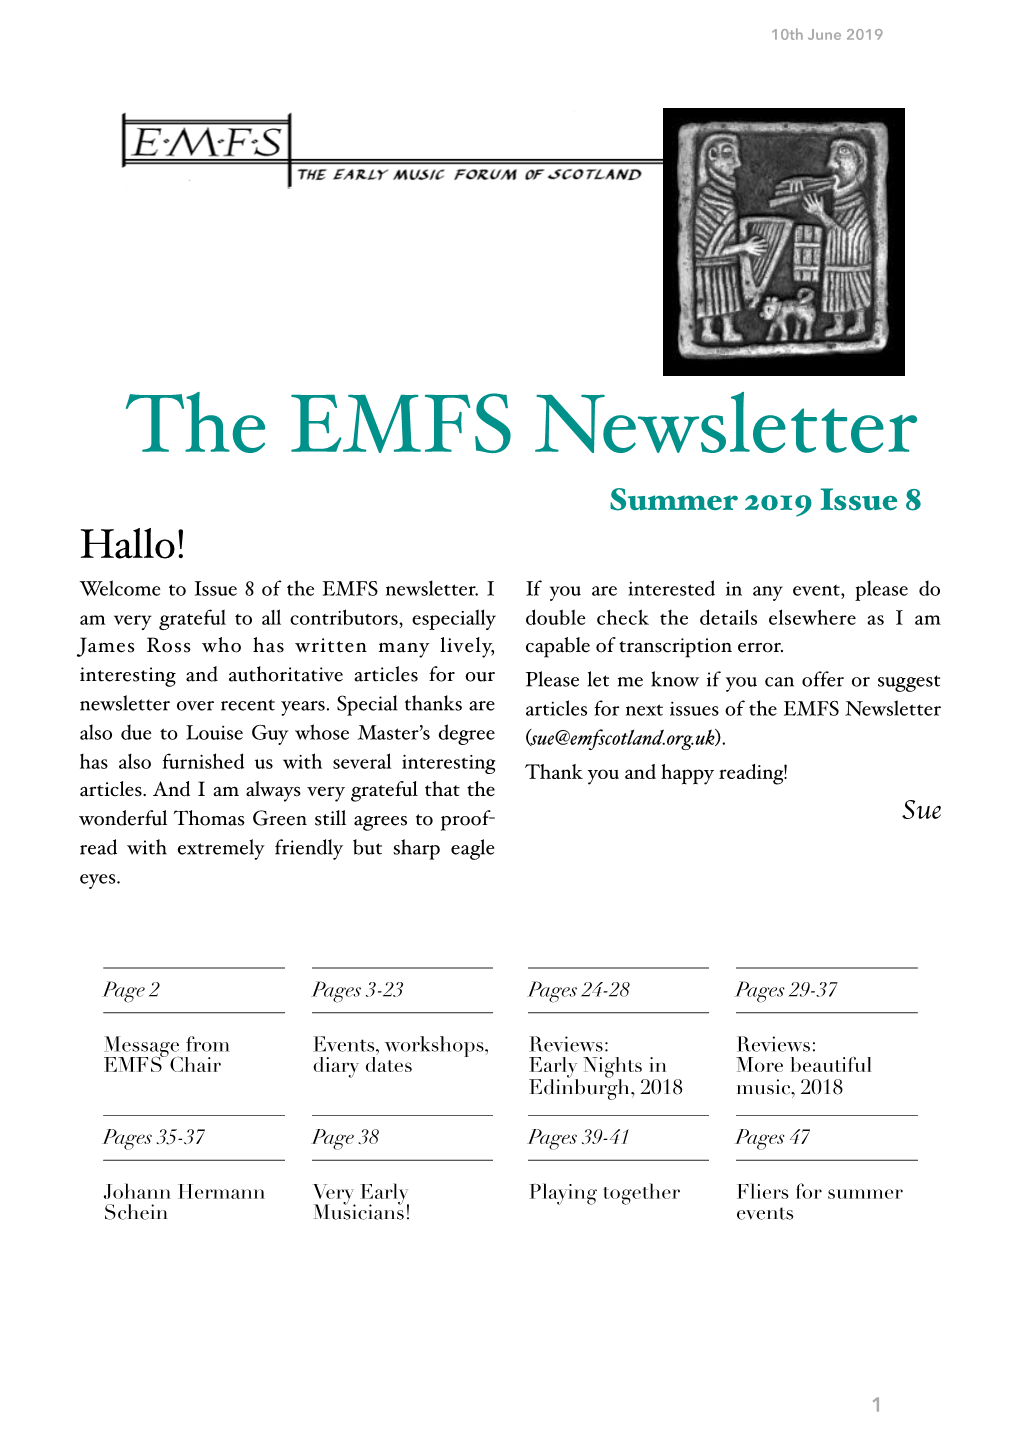 EMFS NEWS Issue 8 Final